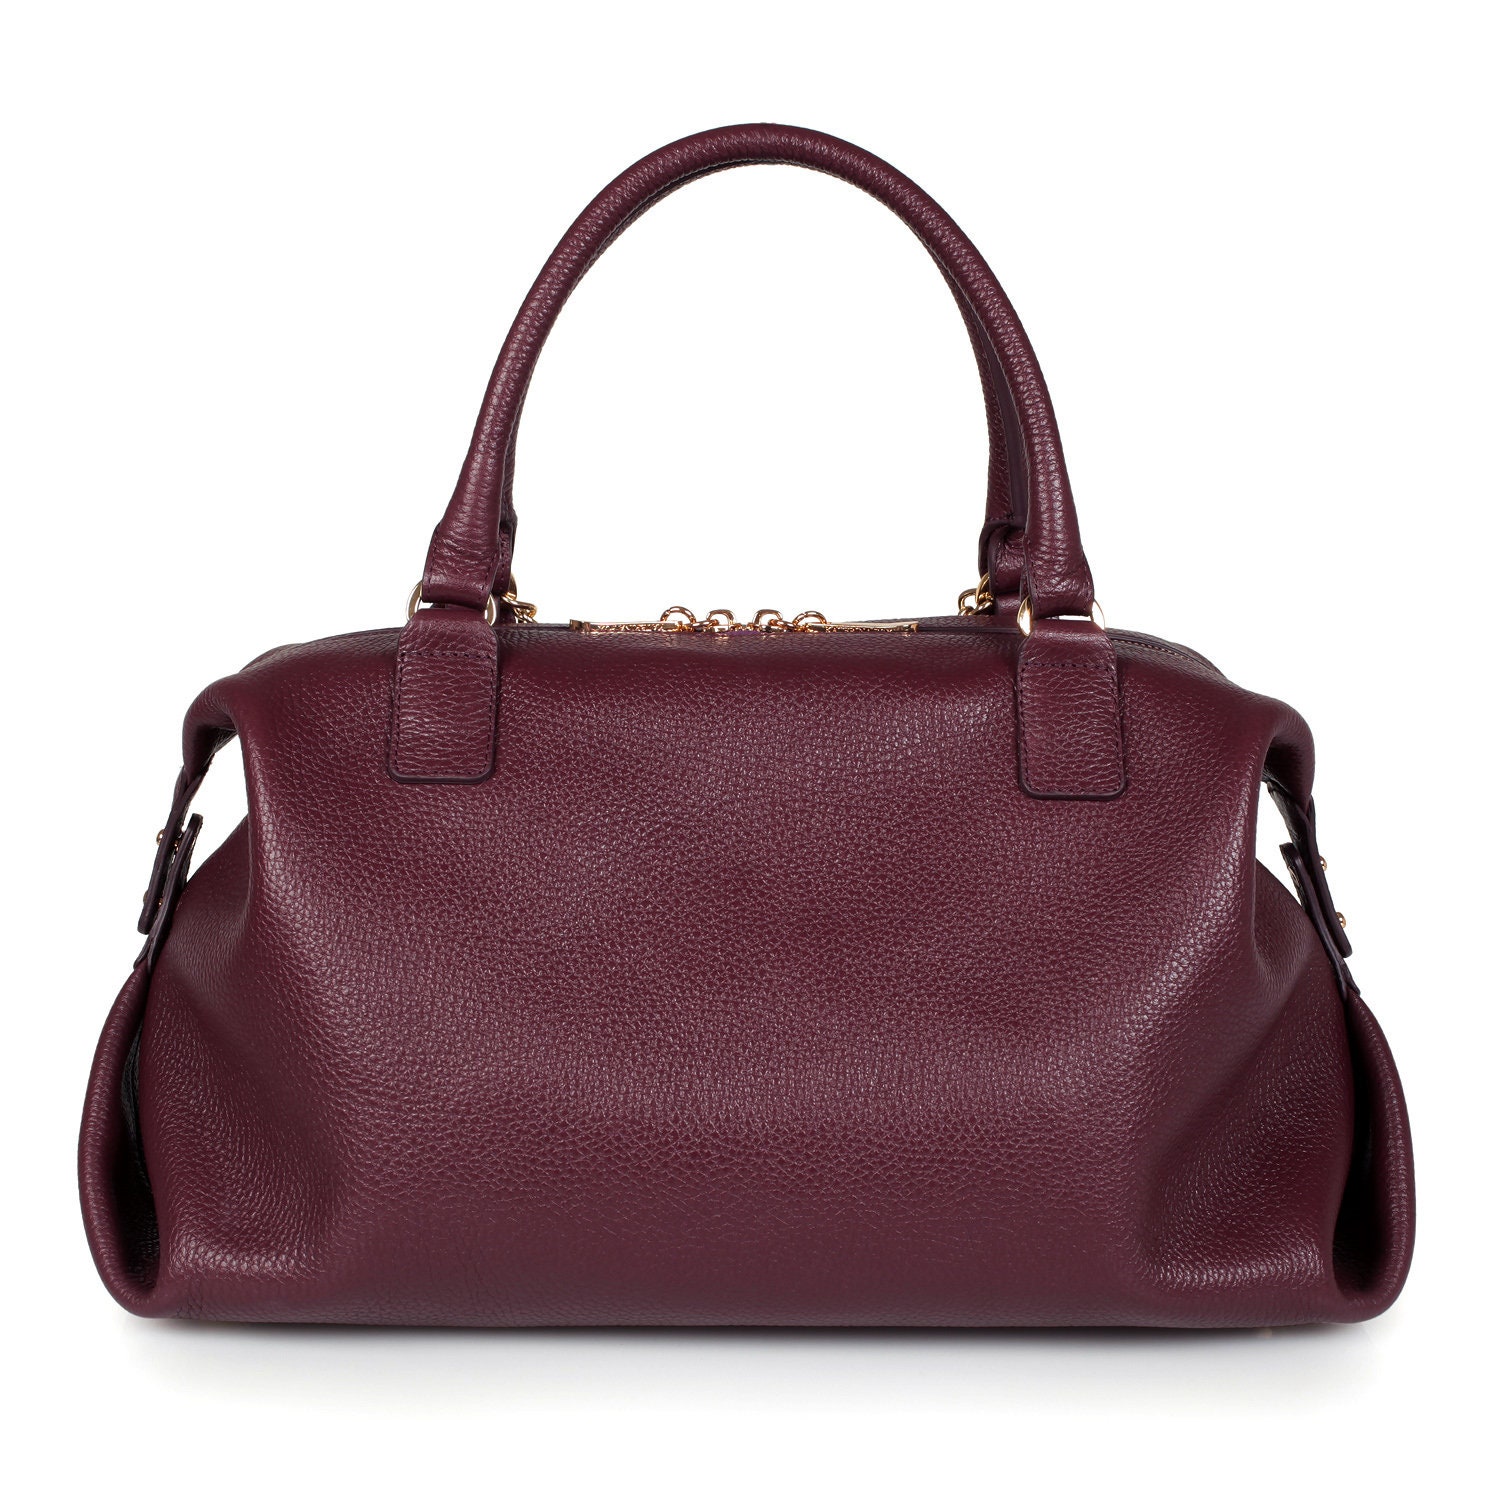 Brown & Beige Handbag Set | The Morphbag by GSK